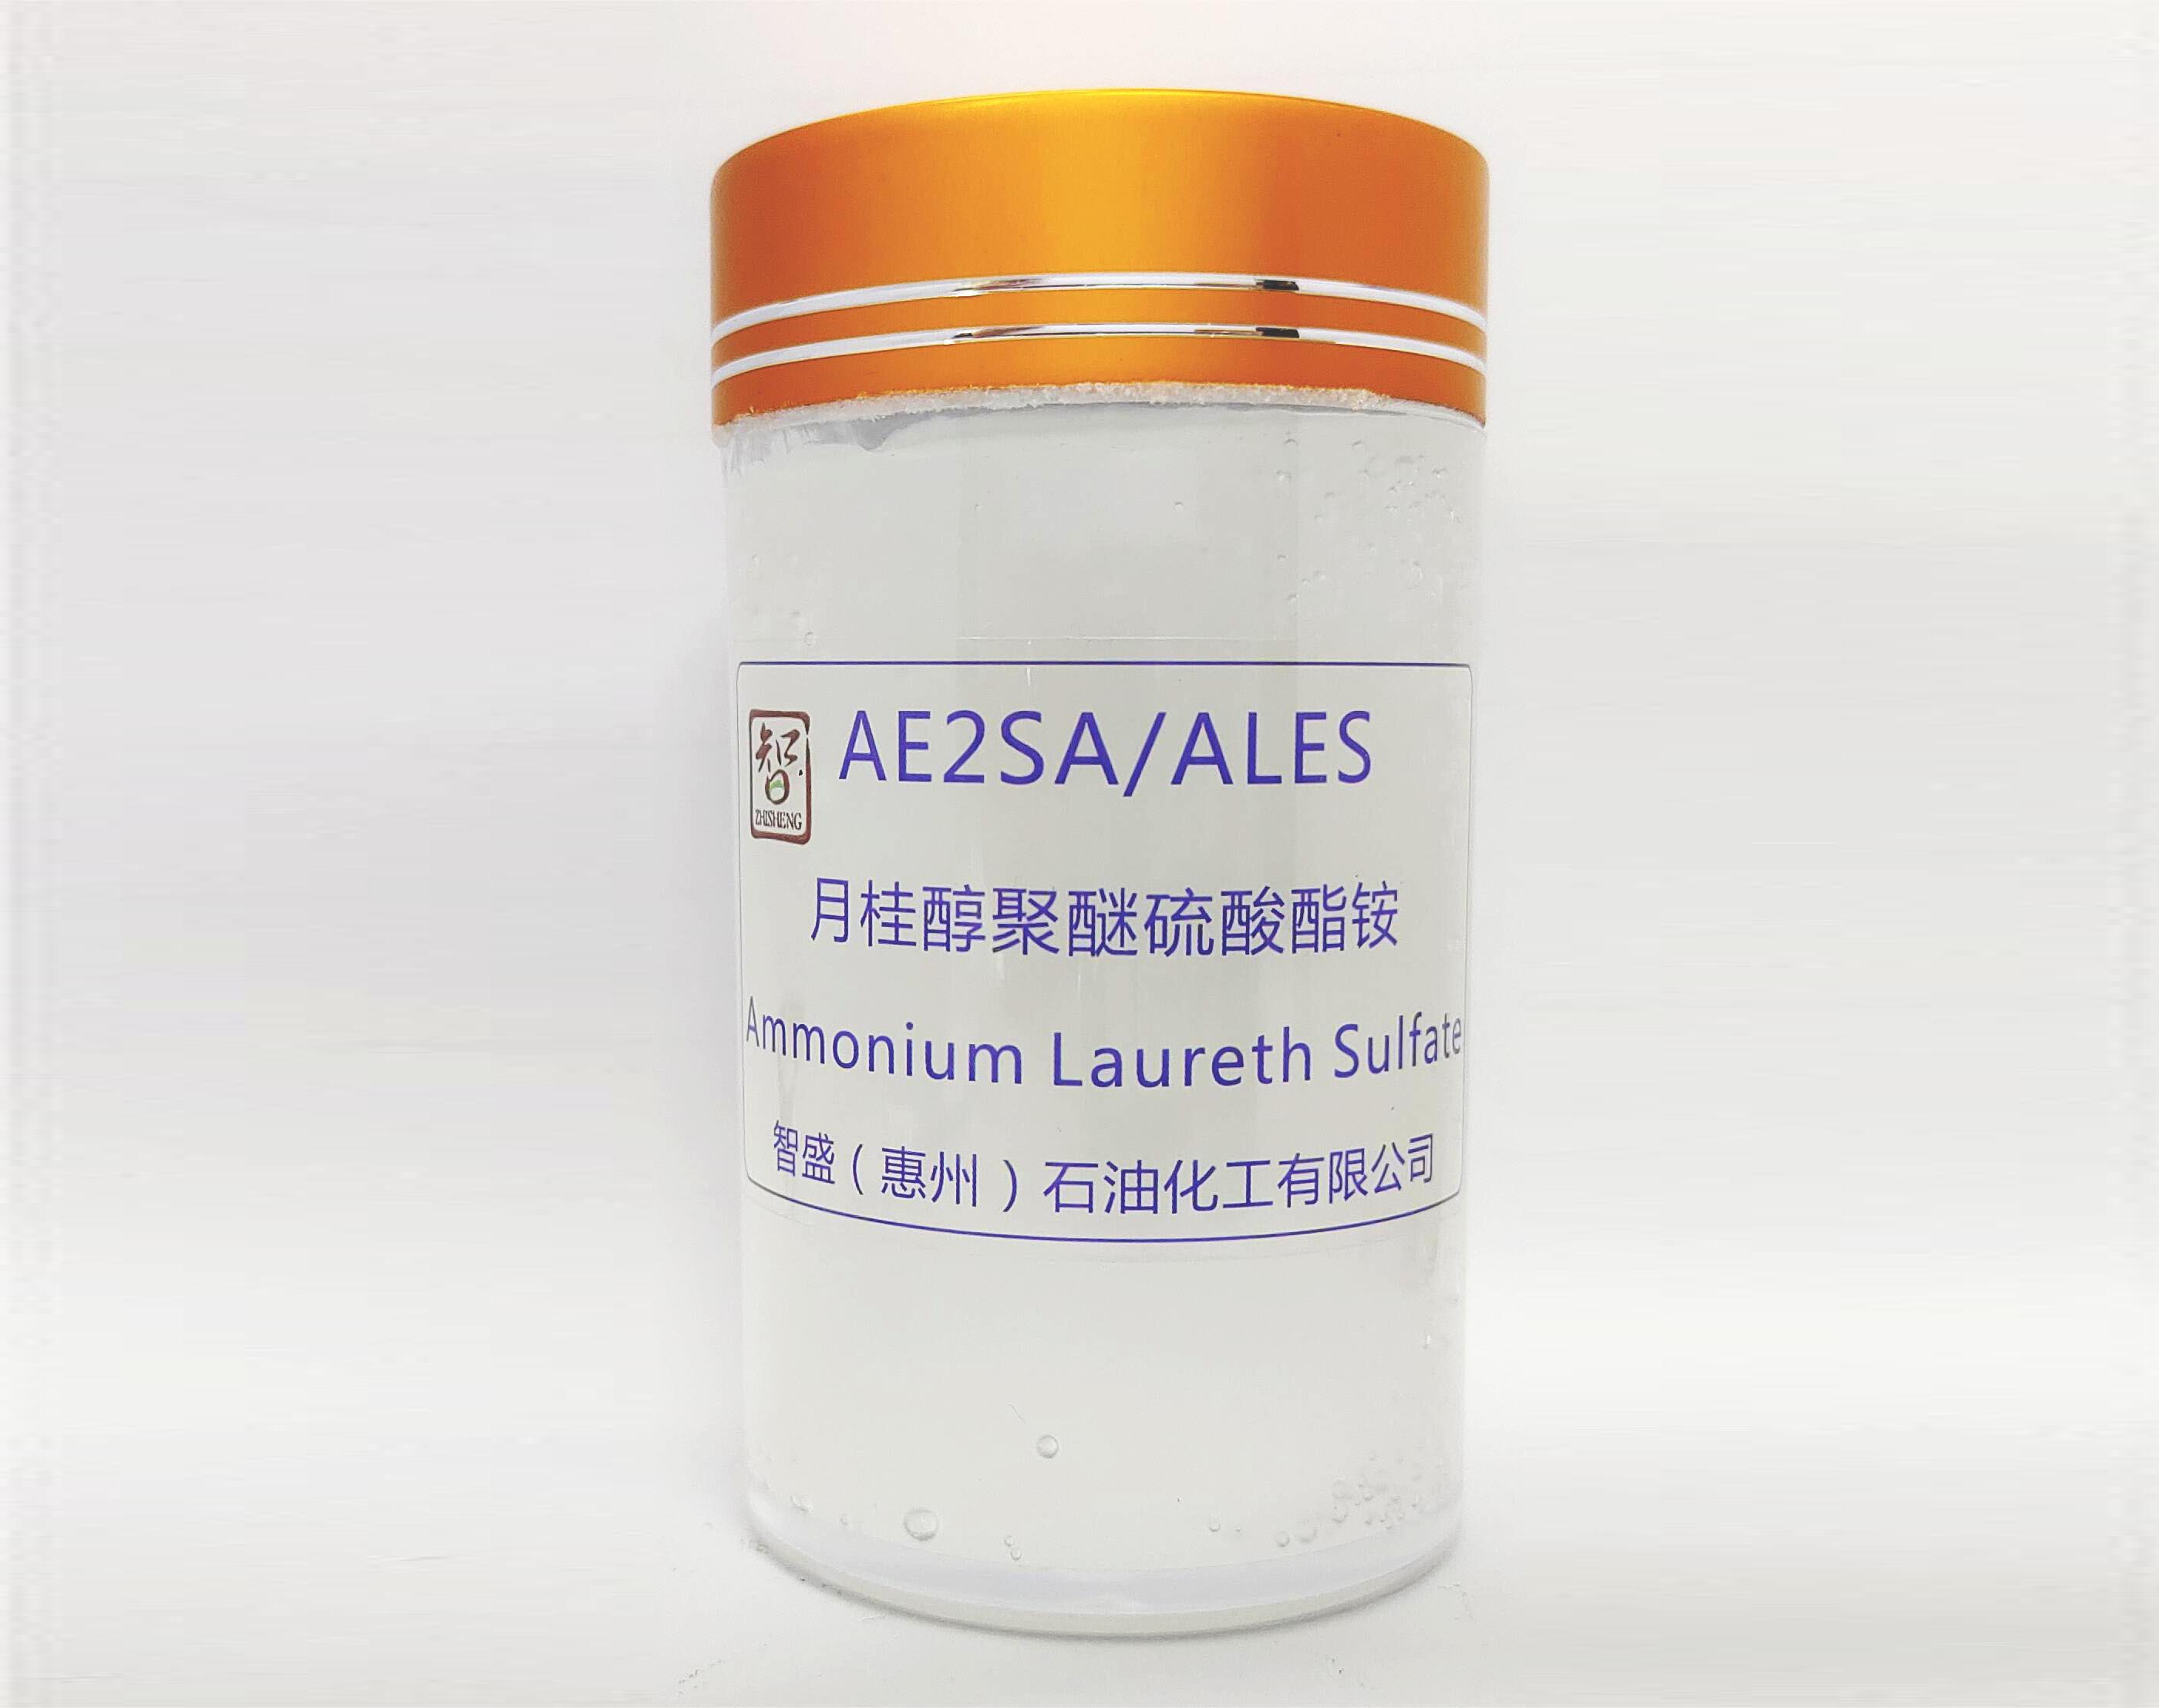 月桂醇聚醚硫酸酯铵(AE2SA/ALES)